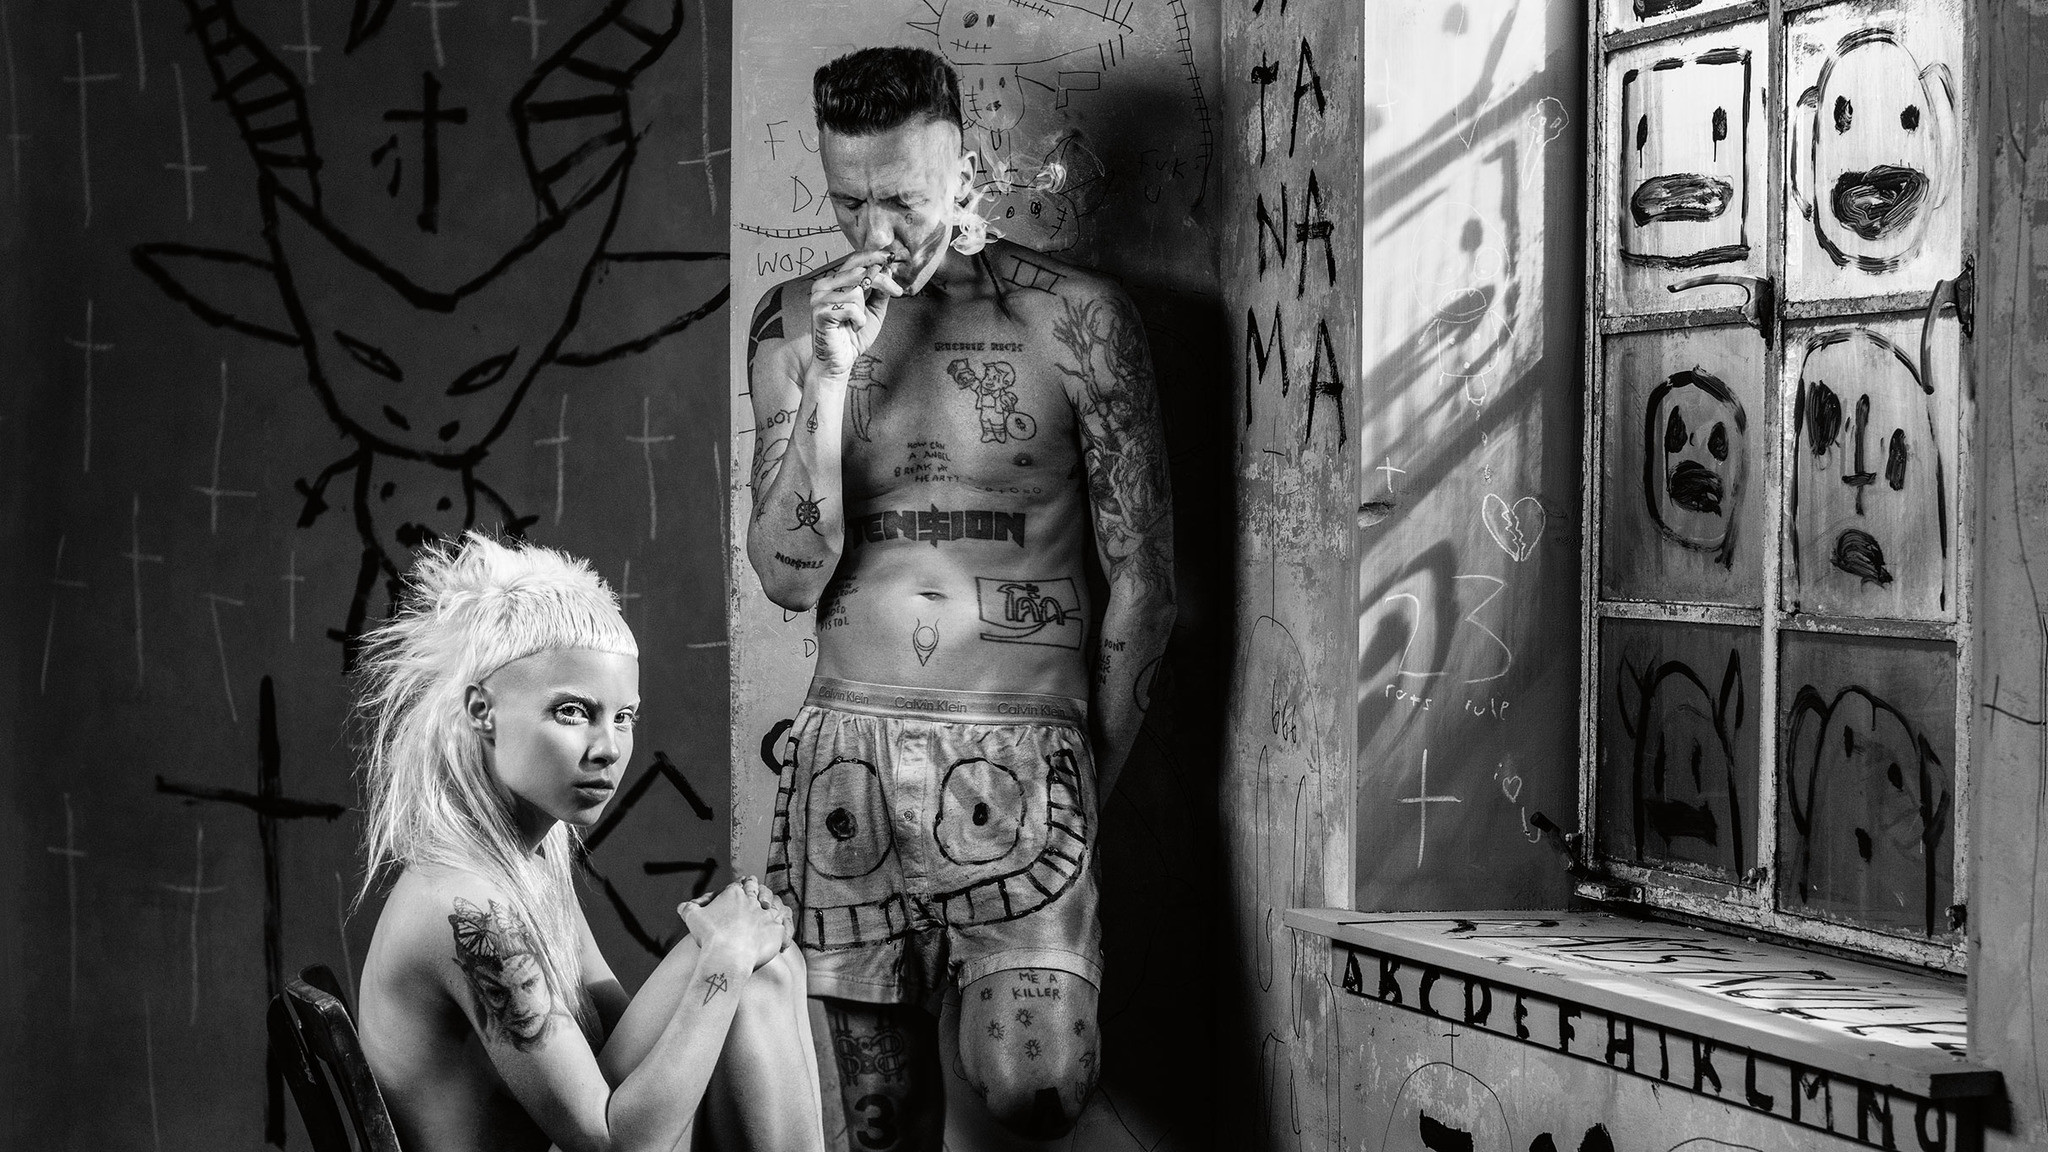 die antwoord wallpaper,en blanco y negro,tatuaje,monocromo,fotografía monocroma,humano